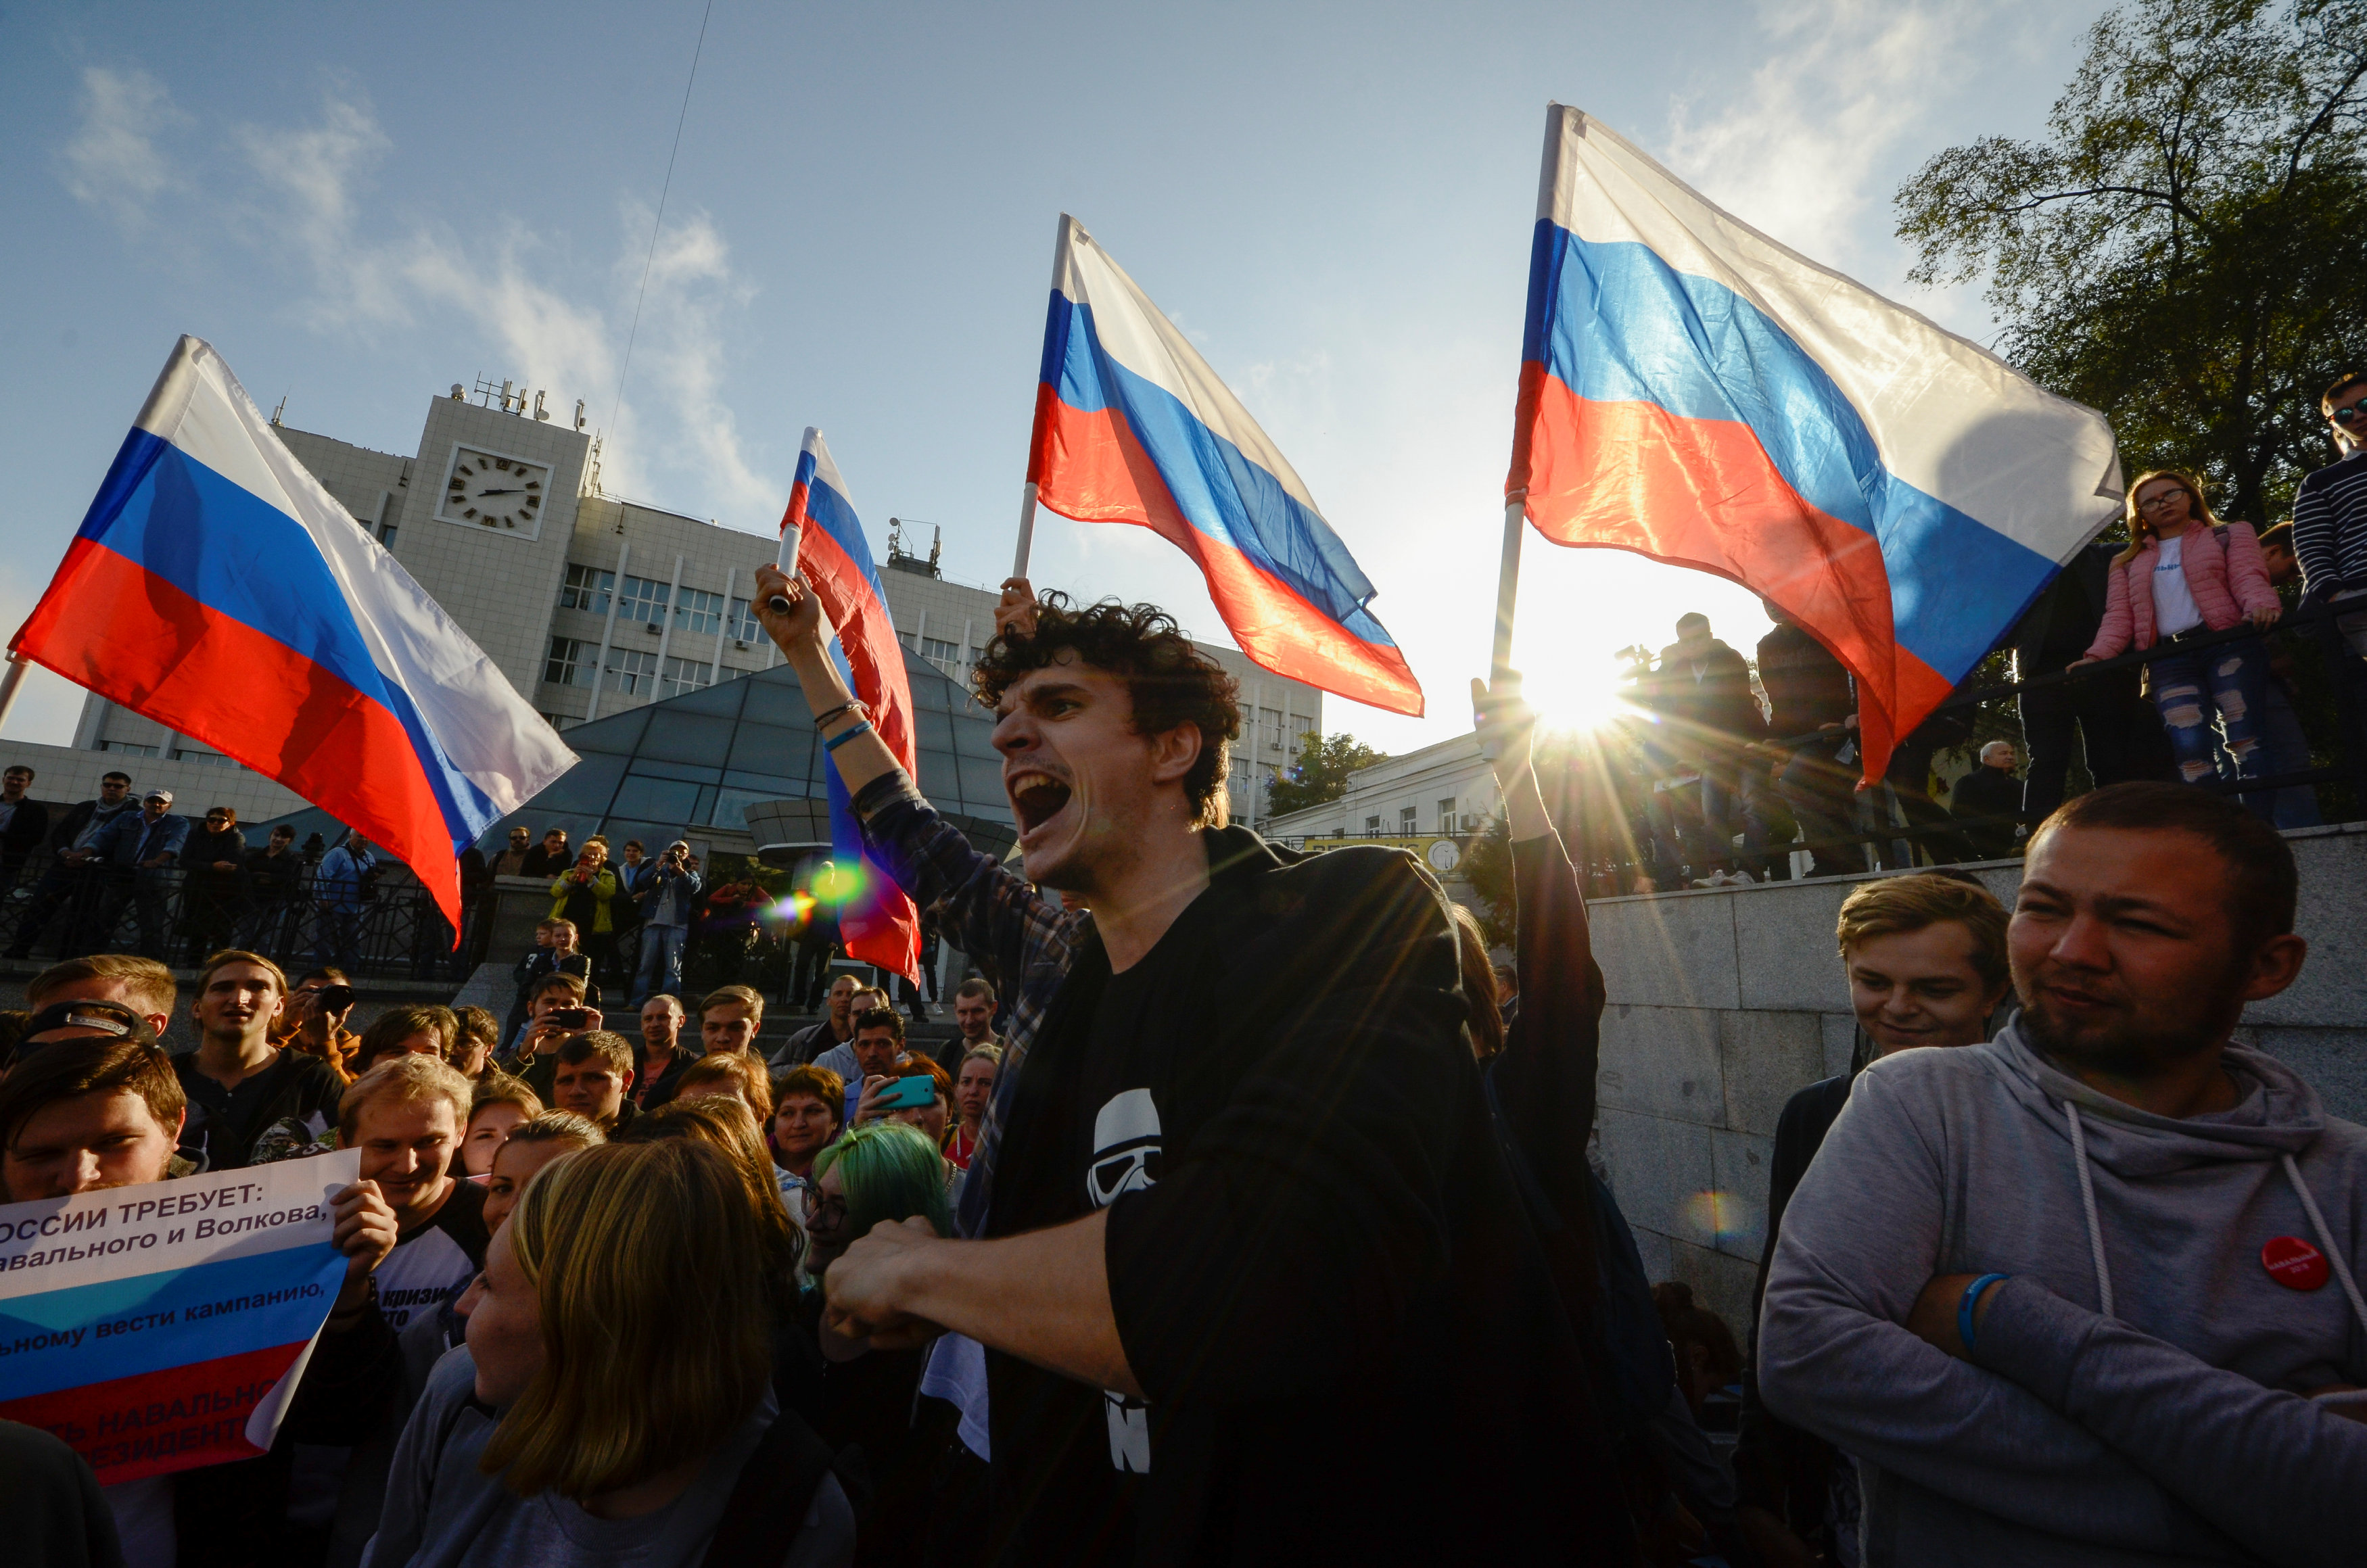 المعارضة الروسية تستجيب لزعيمها وتتظاهر ضد بوتين فى عيد ميلاده